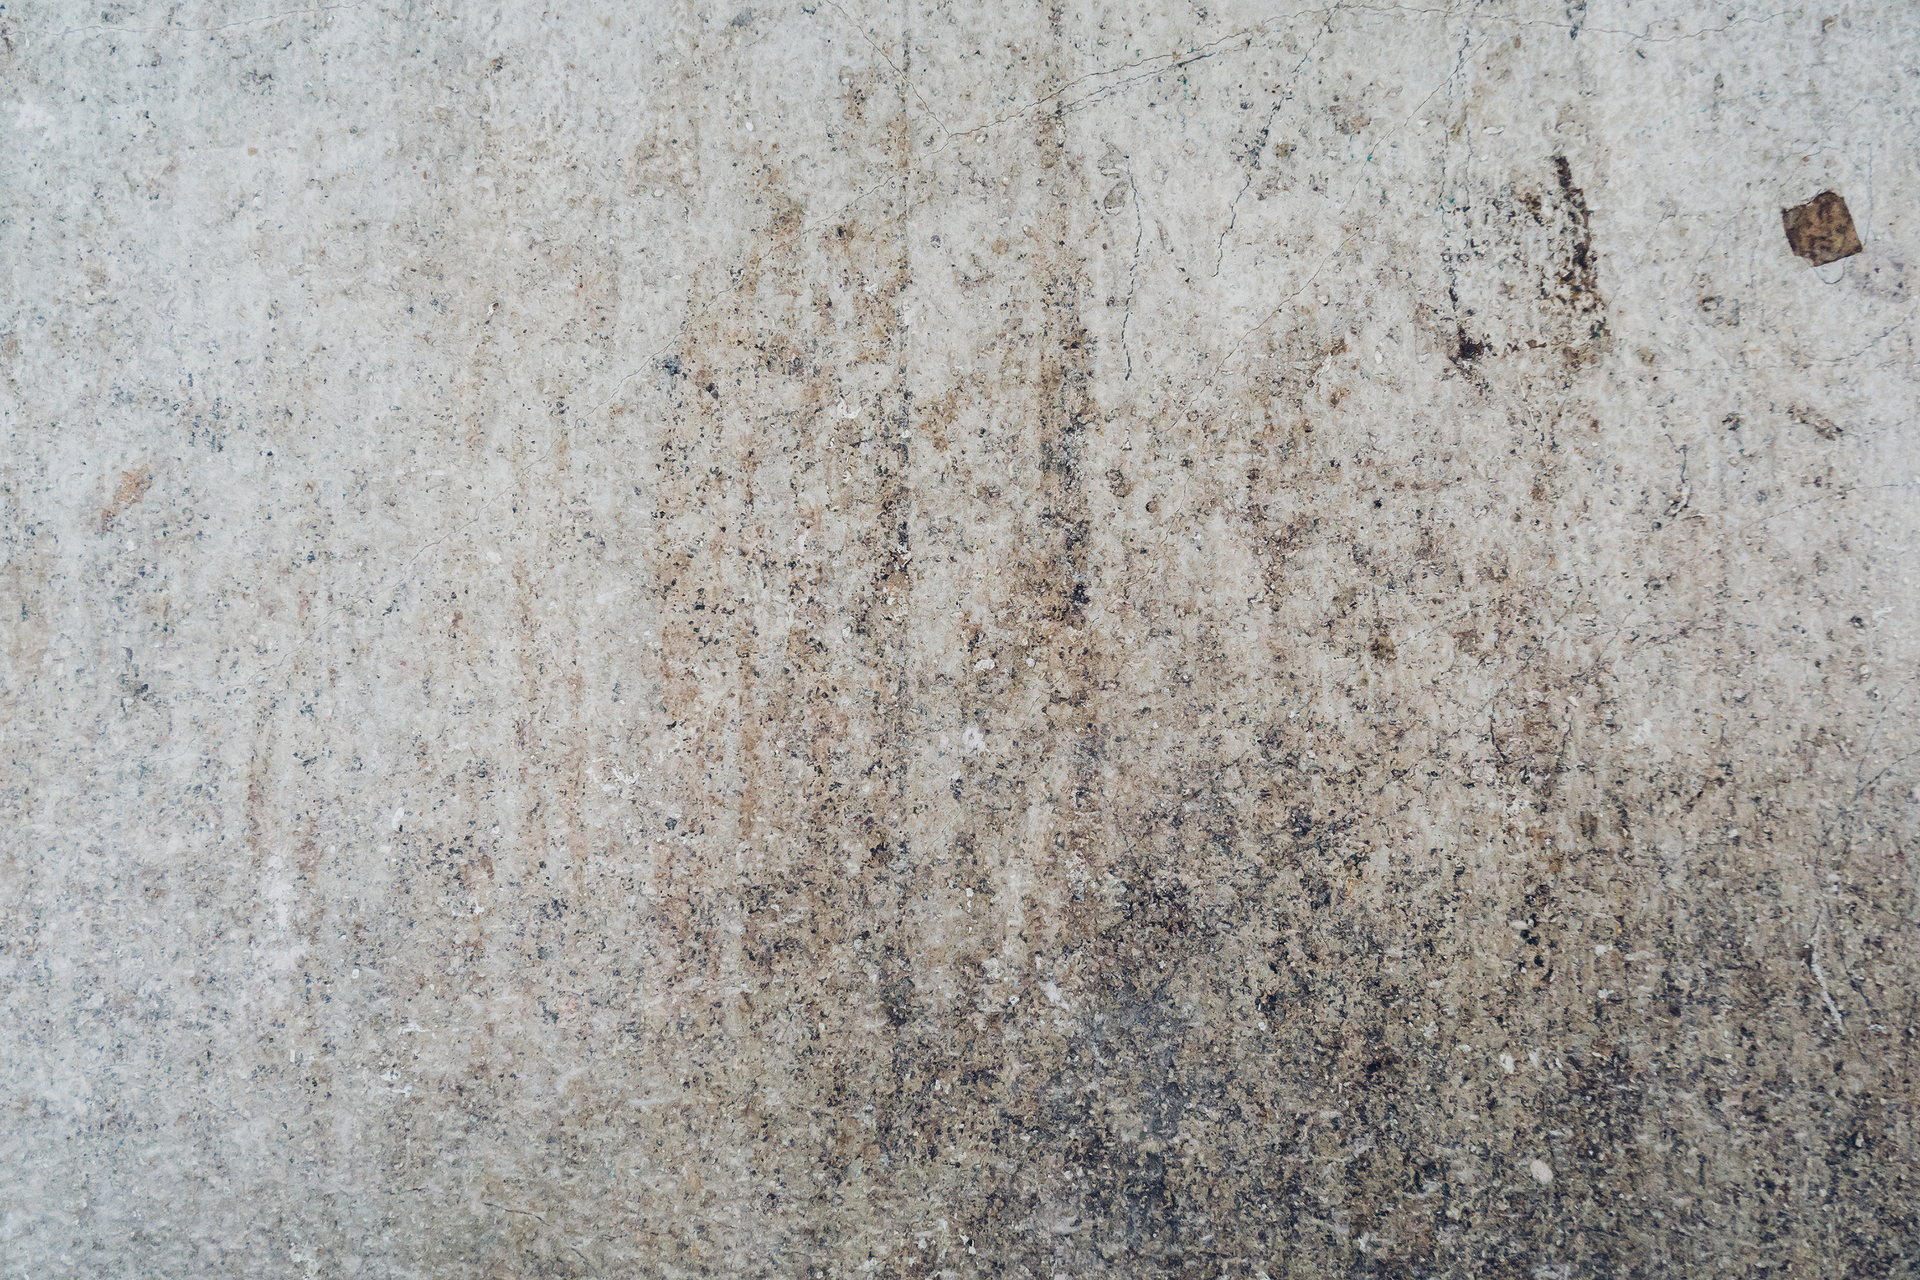 Zagrzybiona ściana pokryta plamami grzyba, co ukazuje problem wilgoci